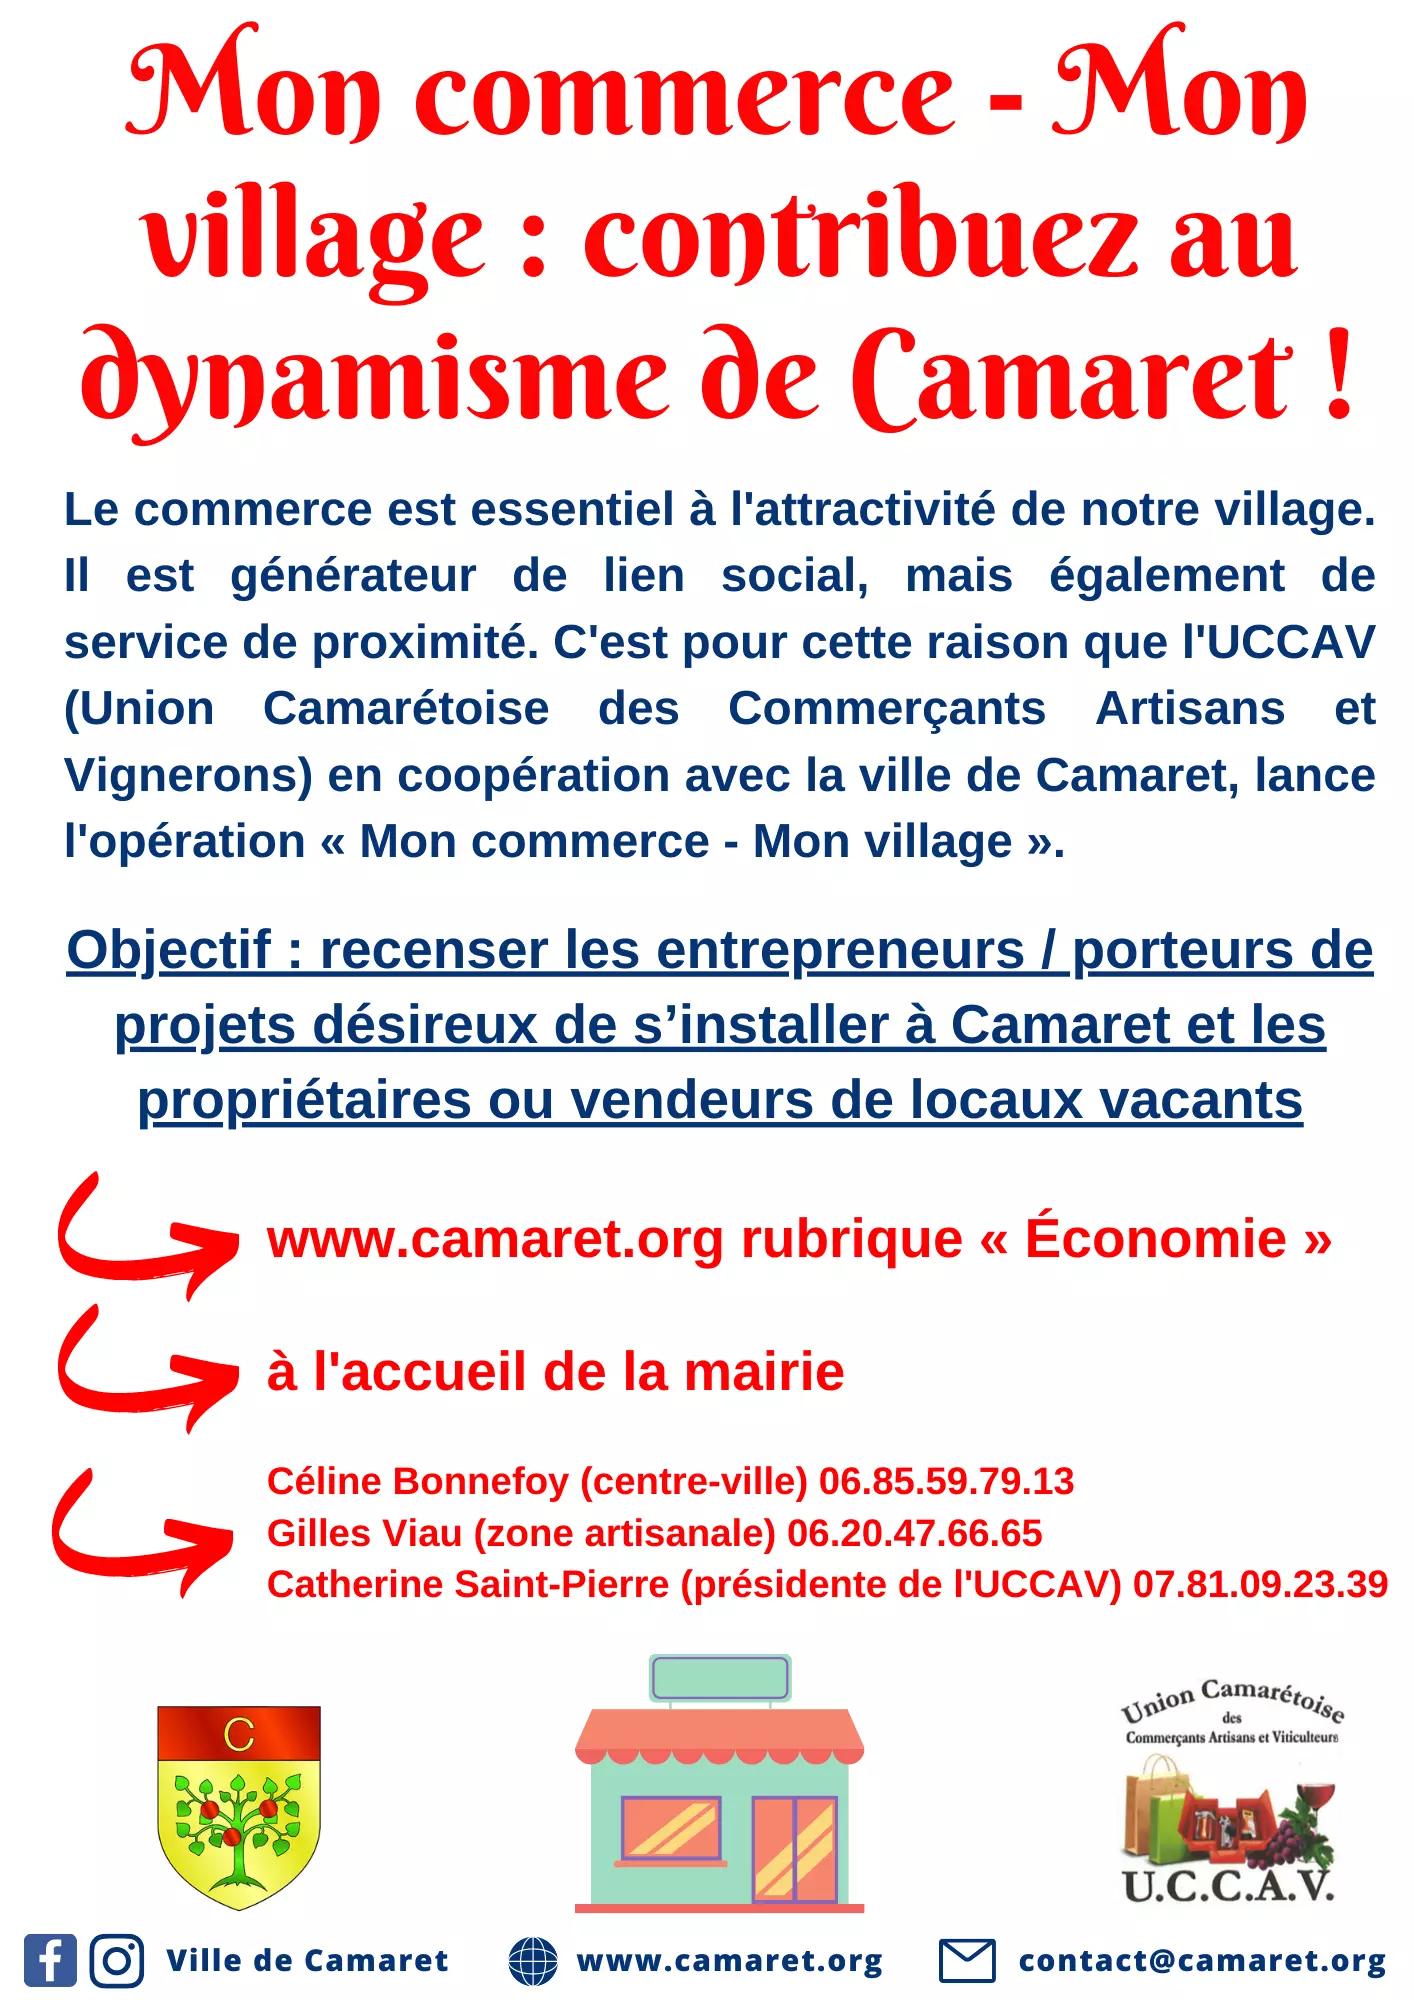 Mon commerce - Mon village : contribuez au dynamisme de Camaret !